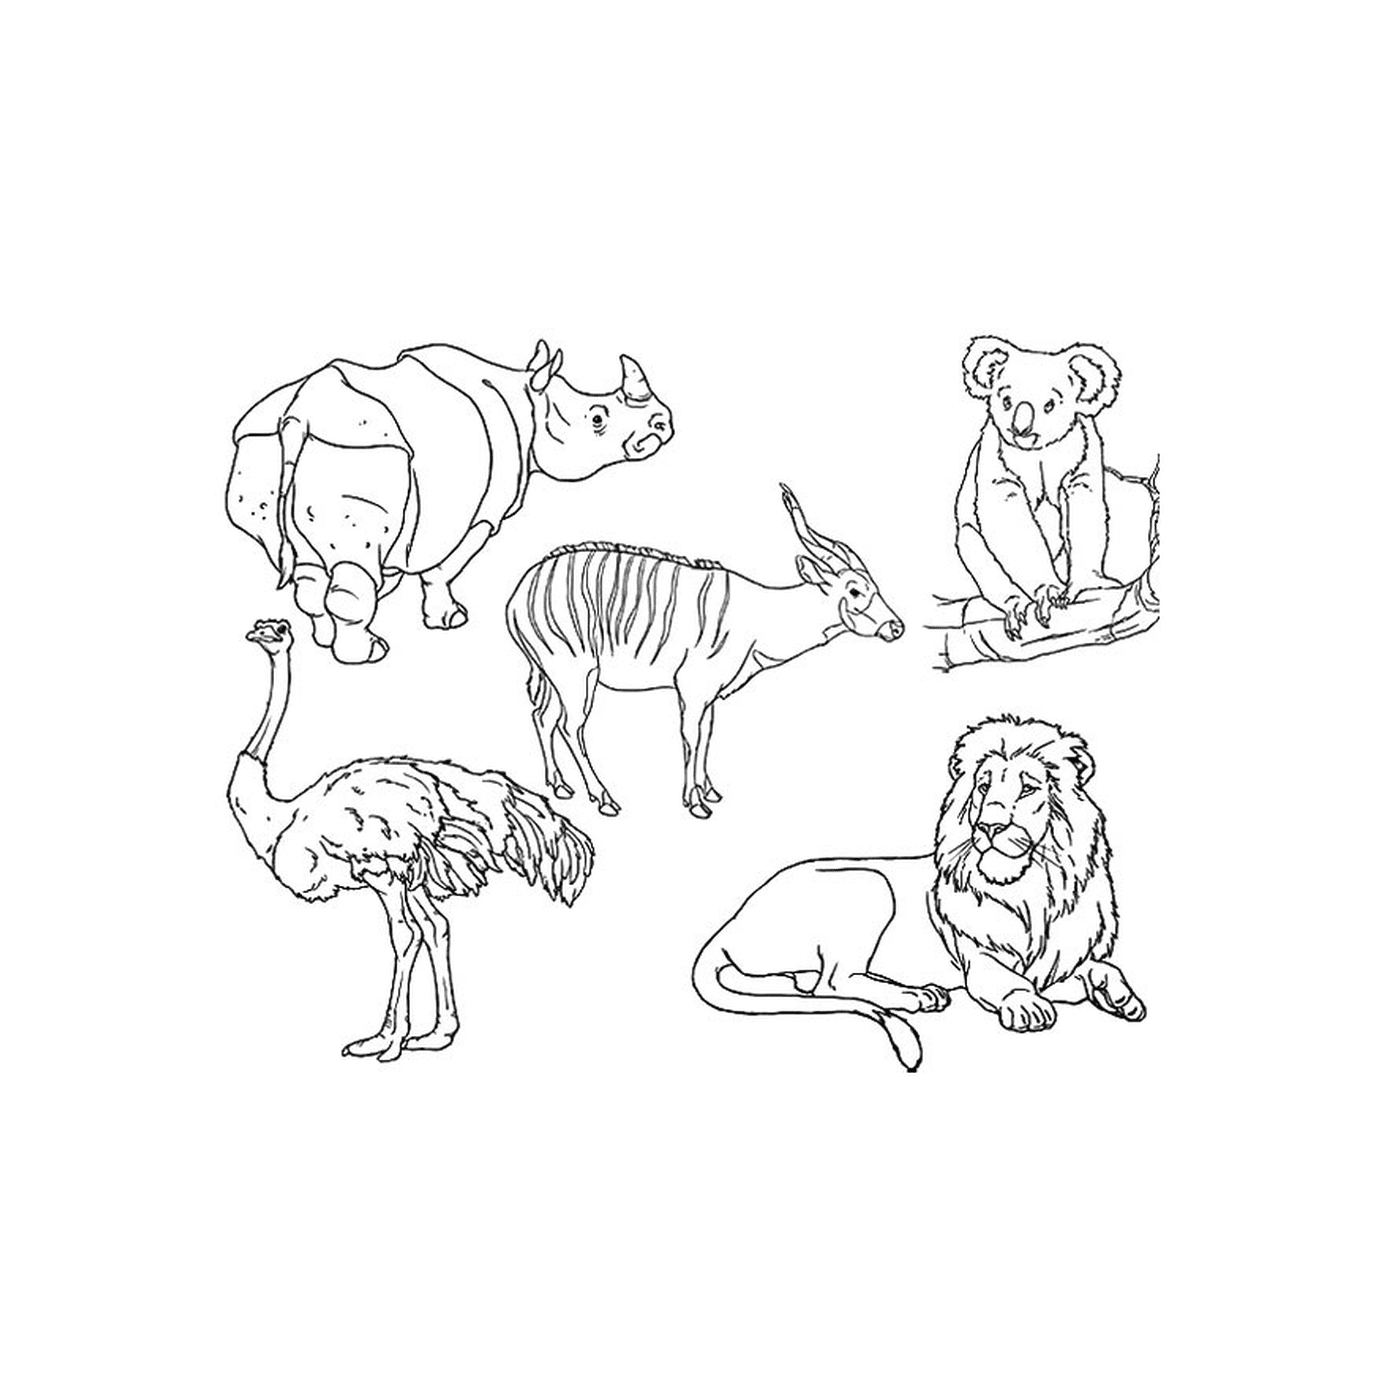   Un groupe d'animaux dessinés 